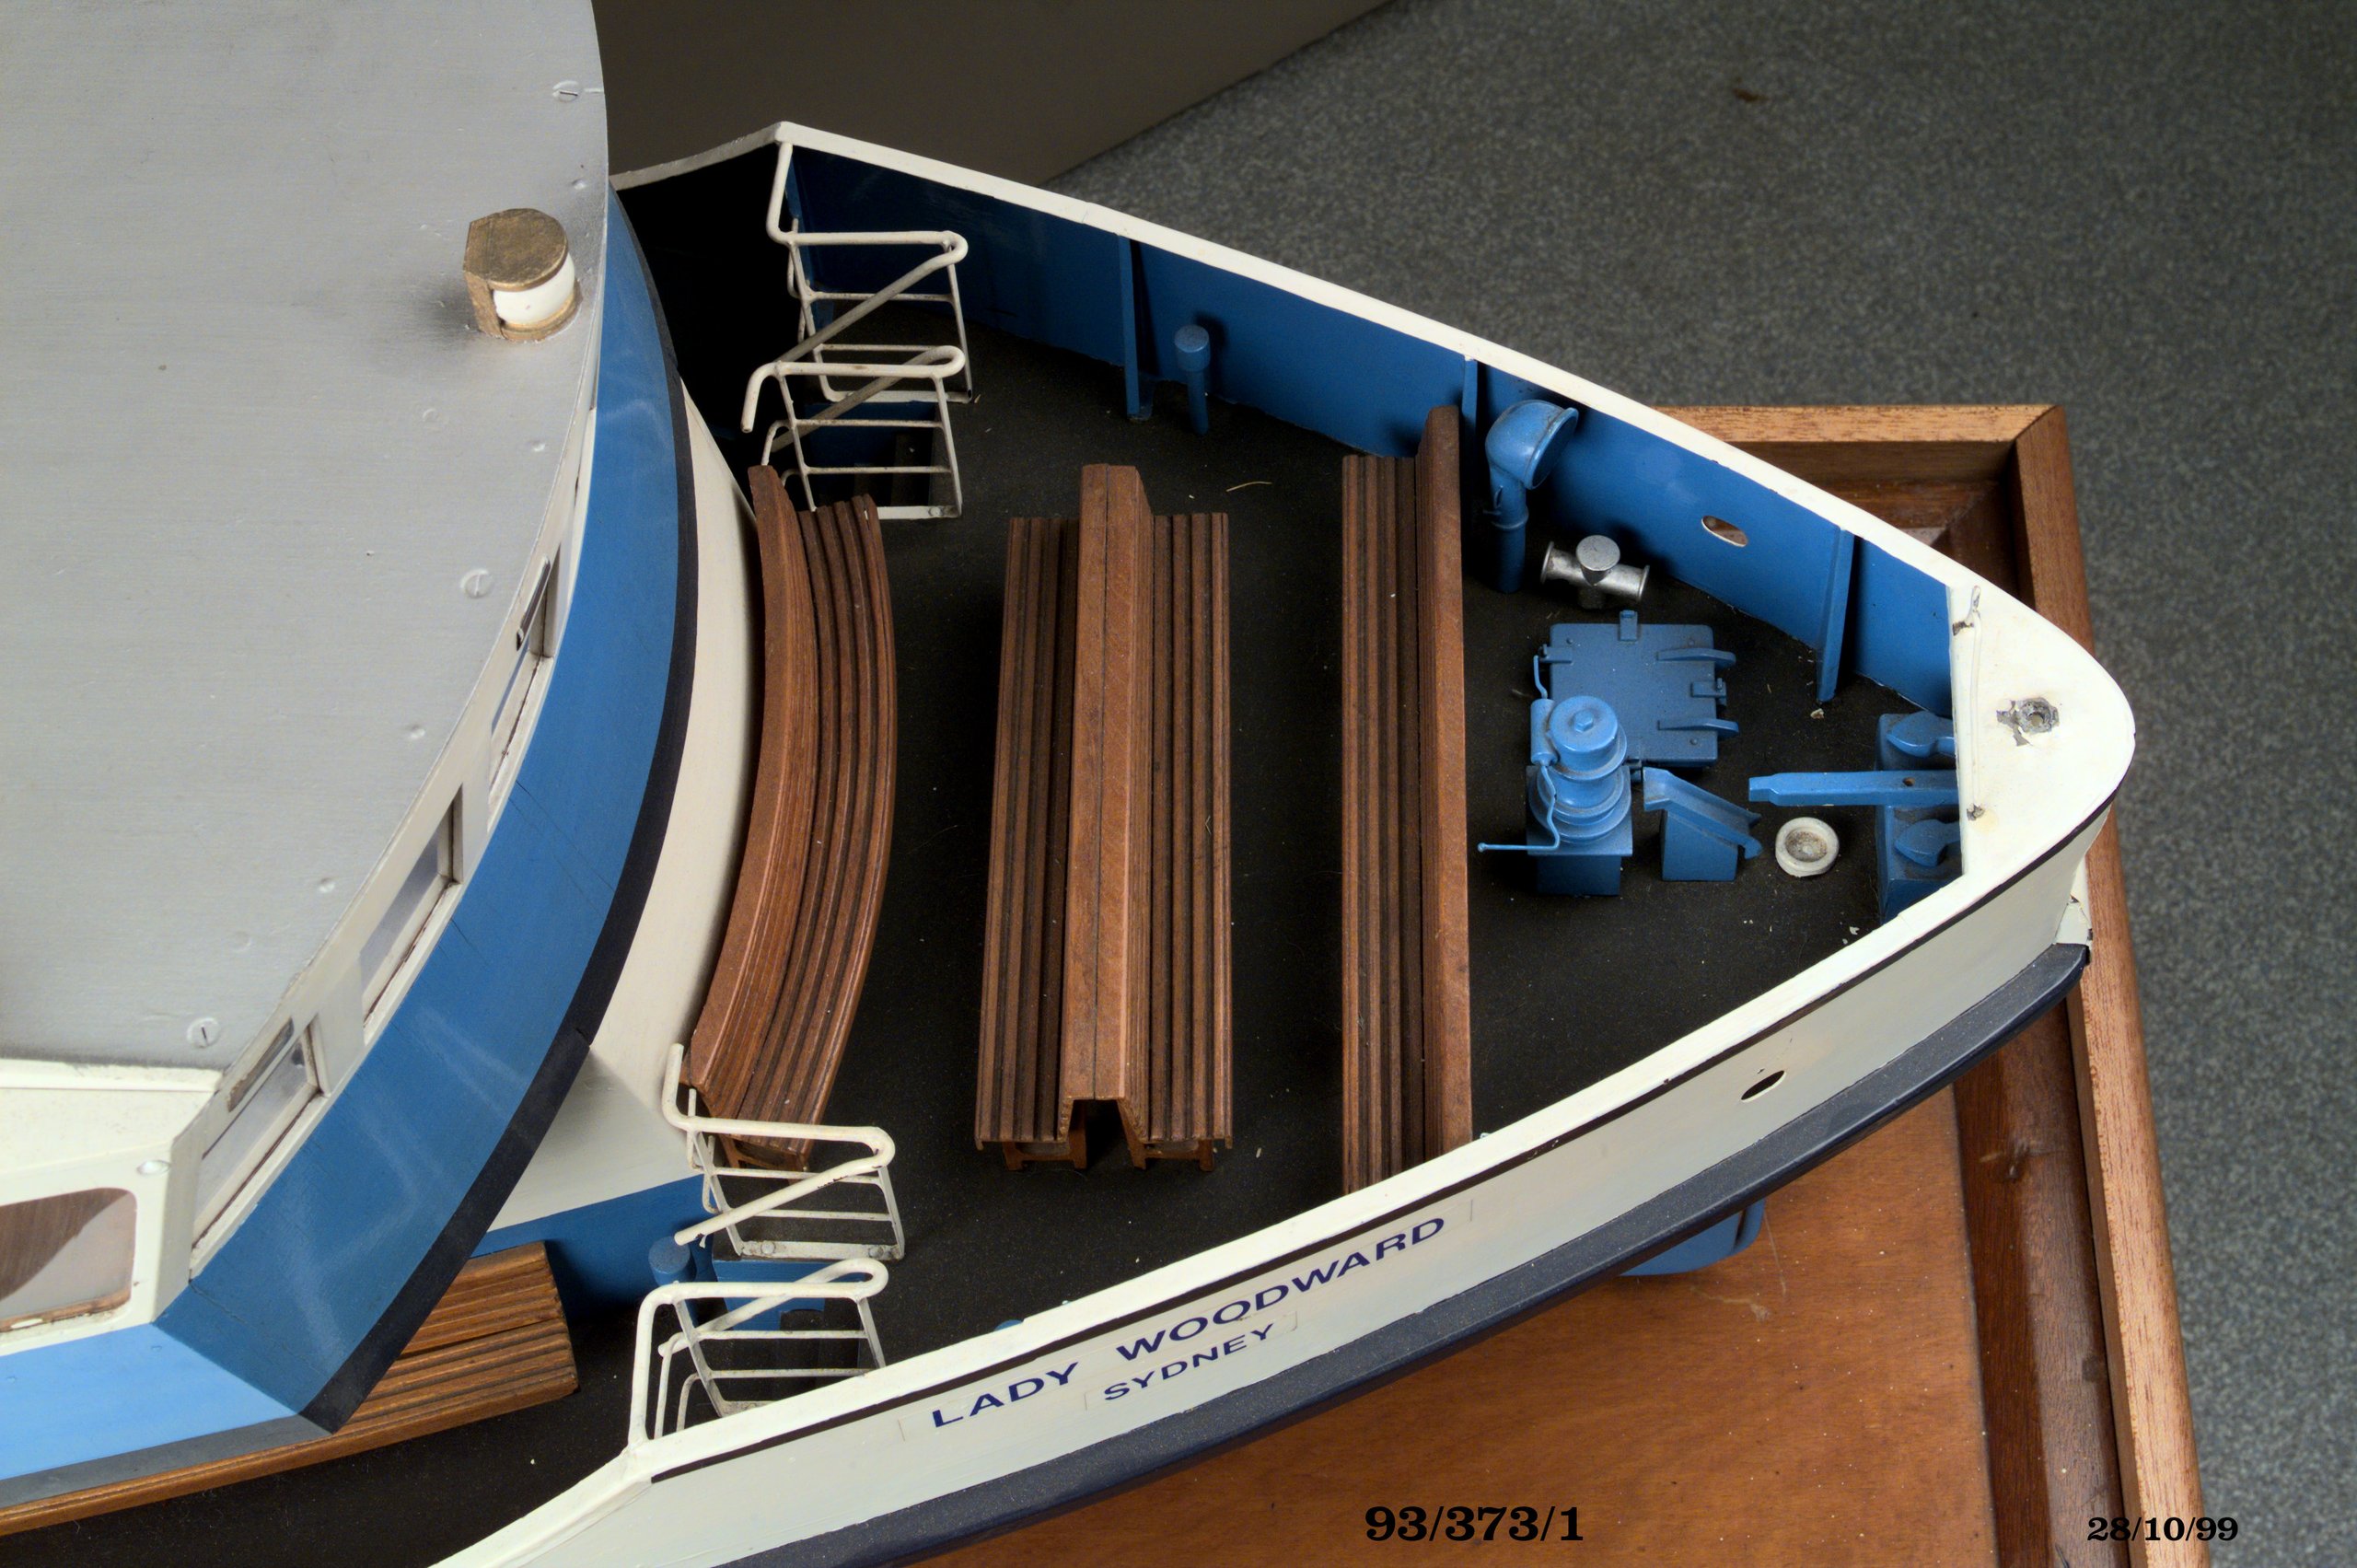 Model of Sydney ferry 'Lady Woodward'